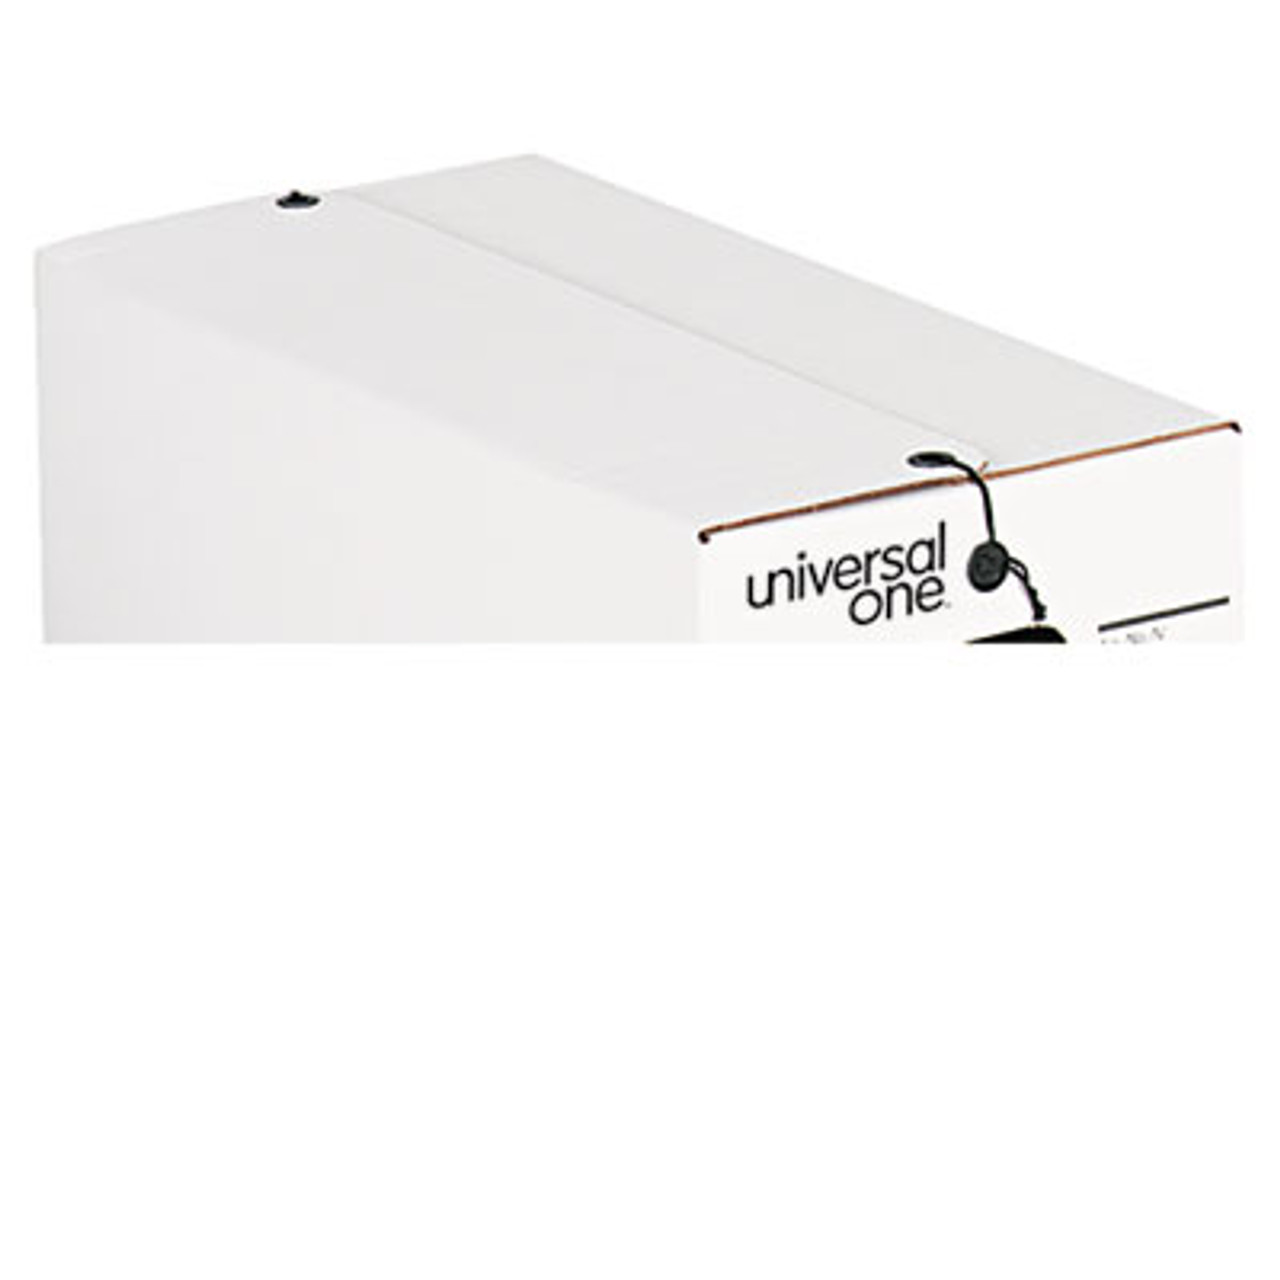 String/Button Storage Box, Letter, Fiberboard, White, 12/Carton